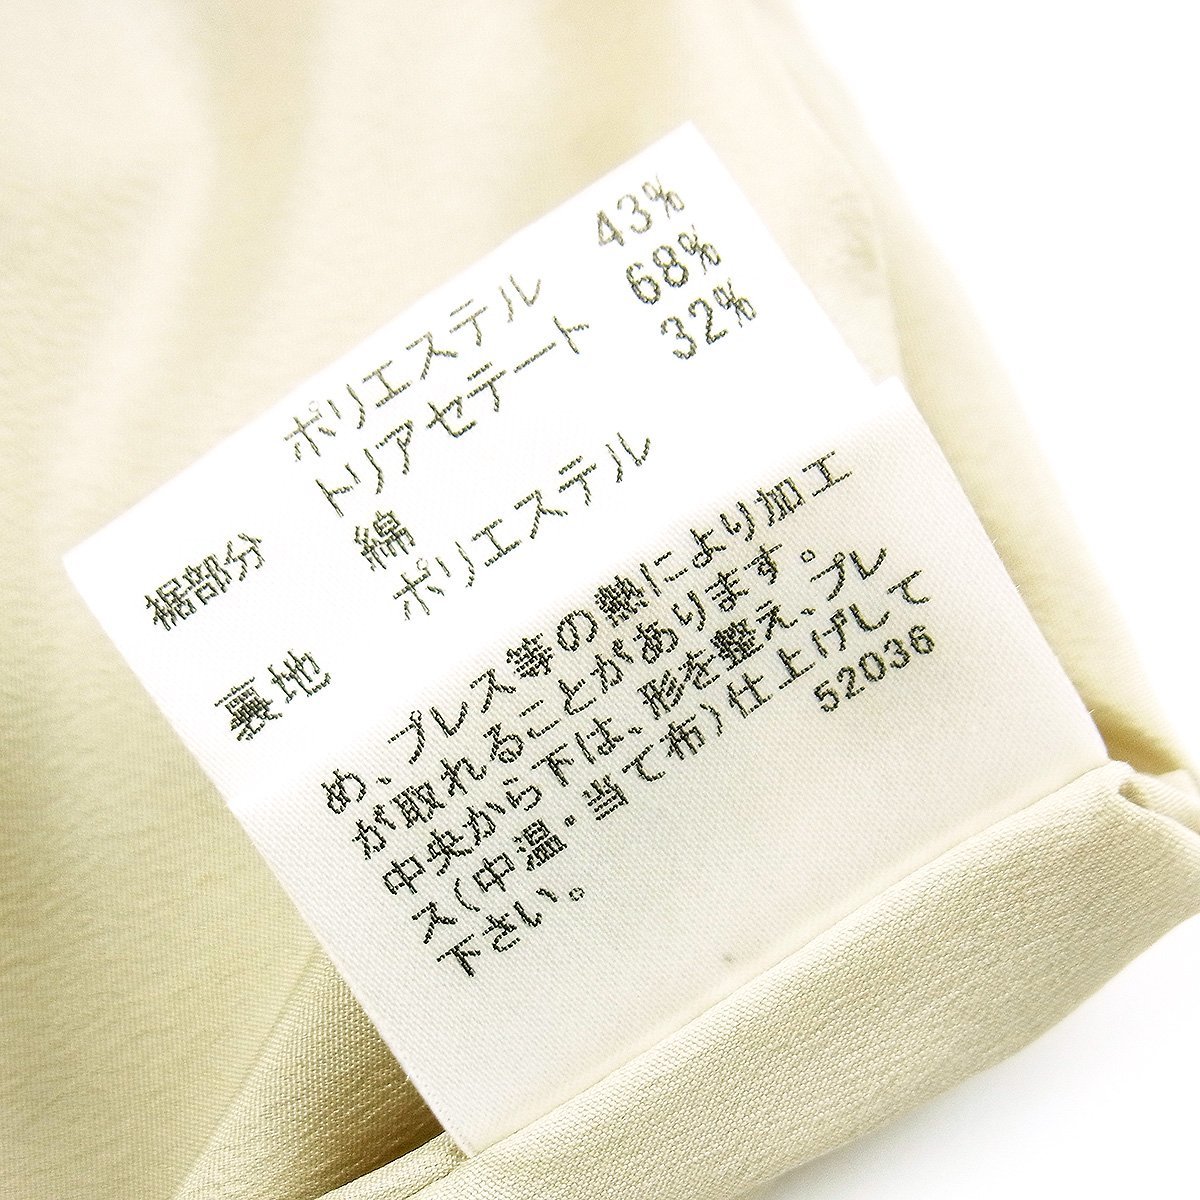  Burberry юбка в складку одноцветный простой серый серия хлопок 57% полиэстер 43% указанный размер :36 BURBERRY LONDON =